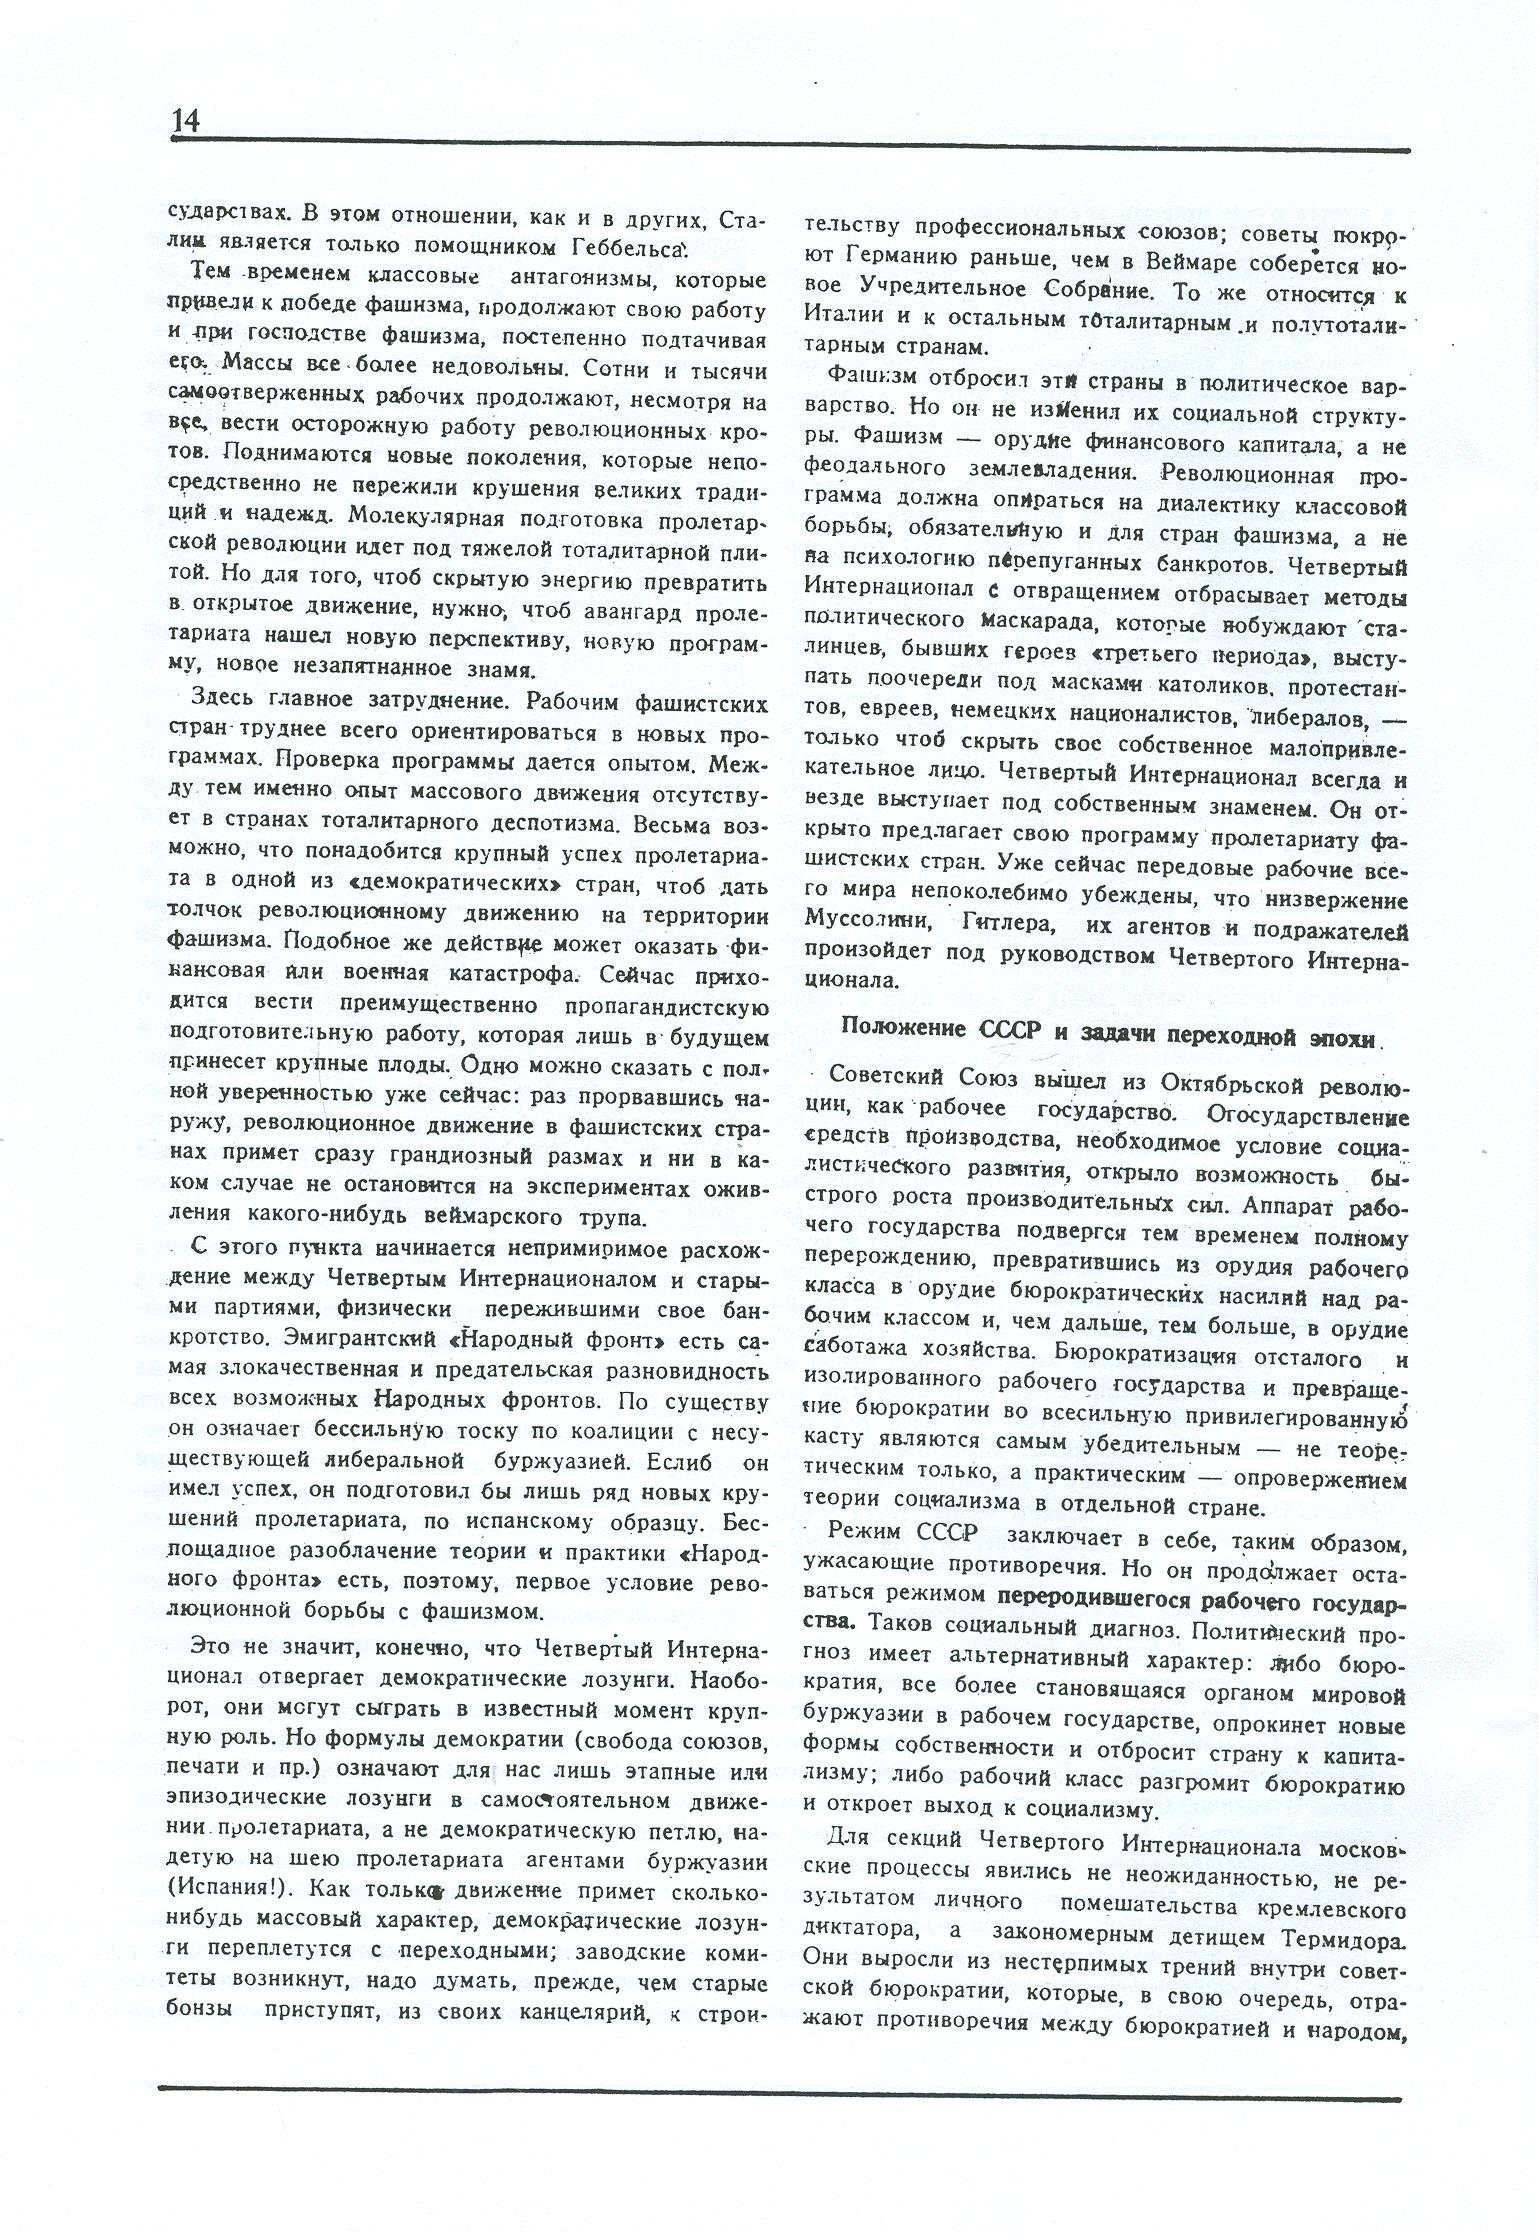 Dagli archivi del bolscevismo n. 1 (marzo 1986) - pag. 14